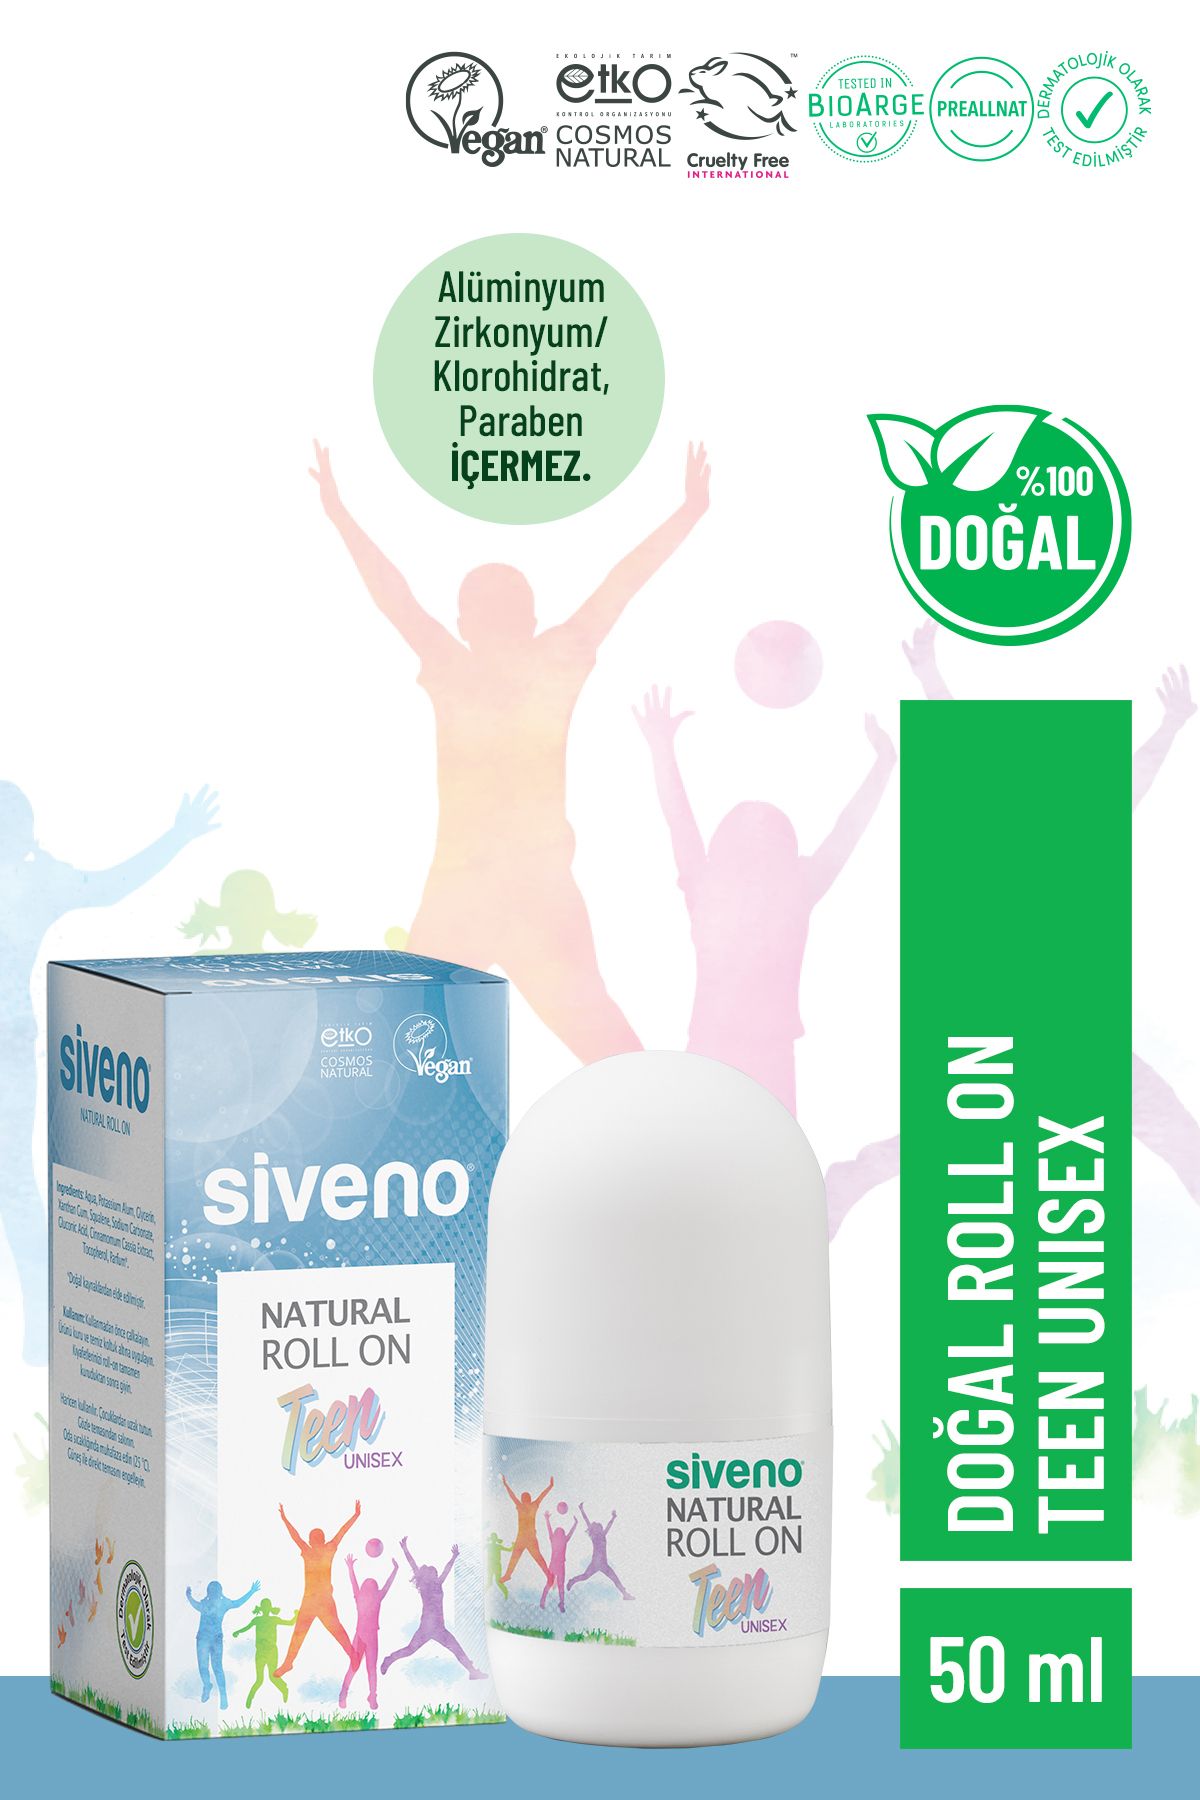 Siveno %100 Doğal Roll-on Unısex Deodorant Ter Kokusu Önleyici Bitkisel Lekesiz Vegan 50 ml